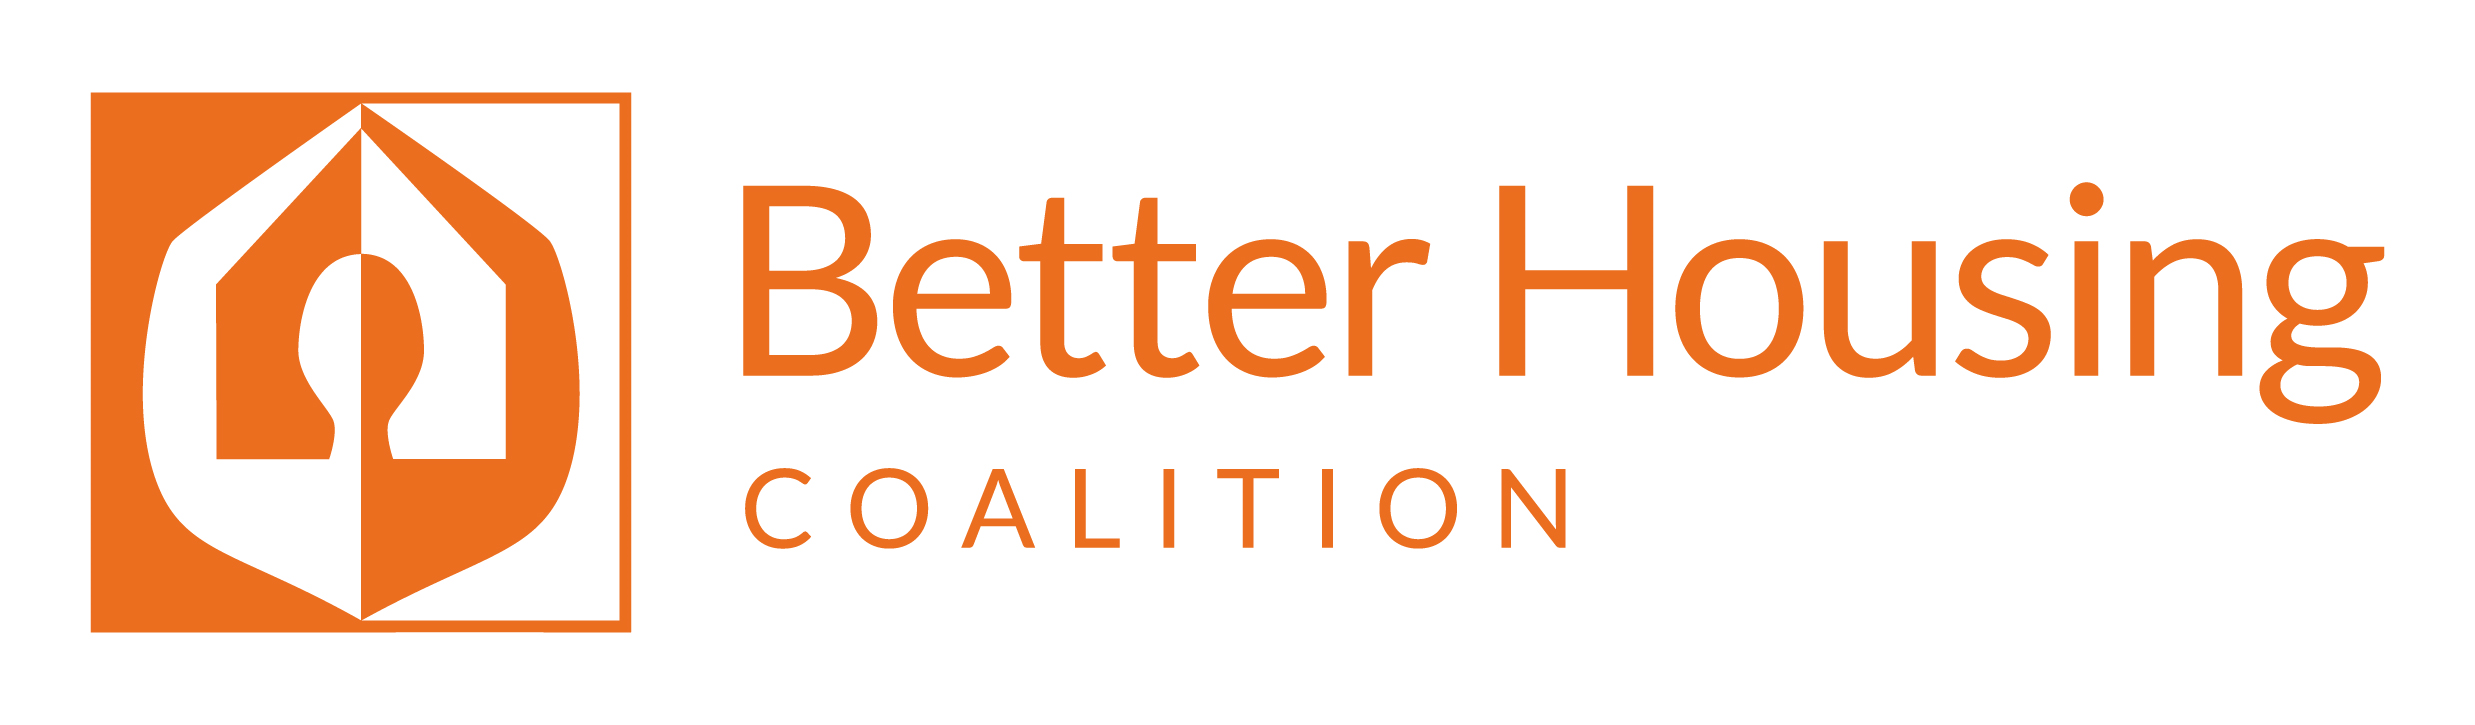 Better Housing Coalition logo